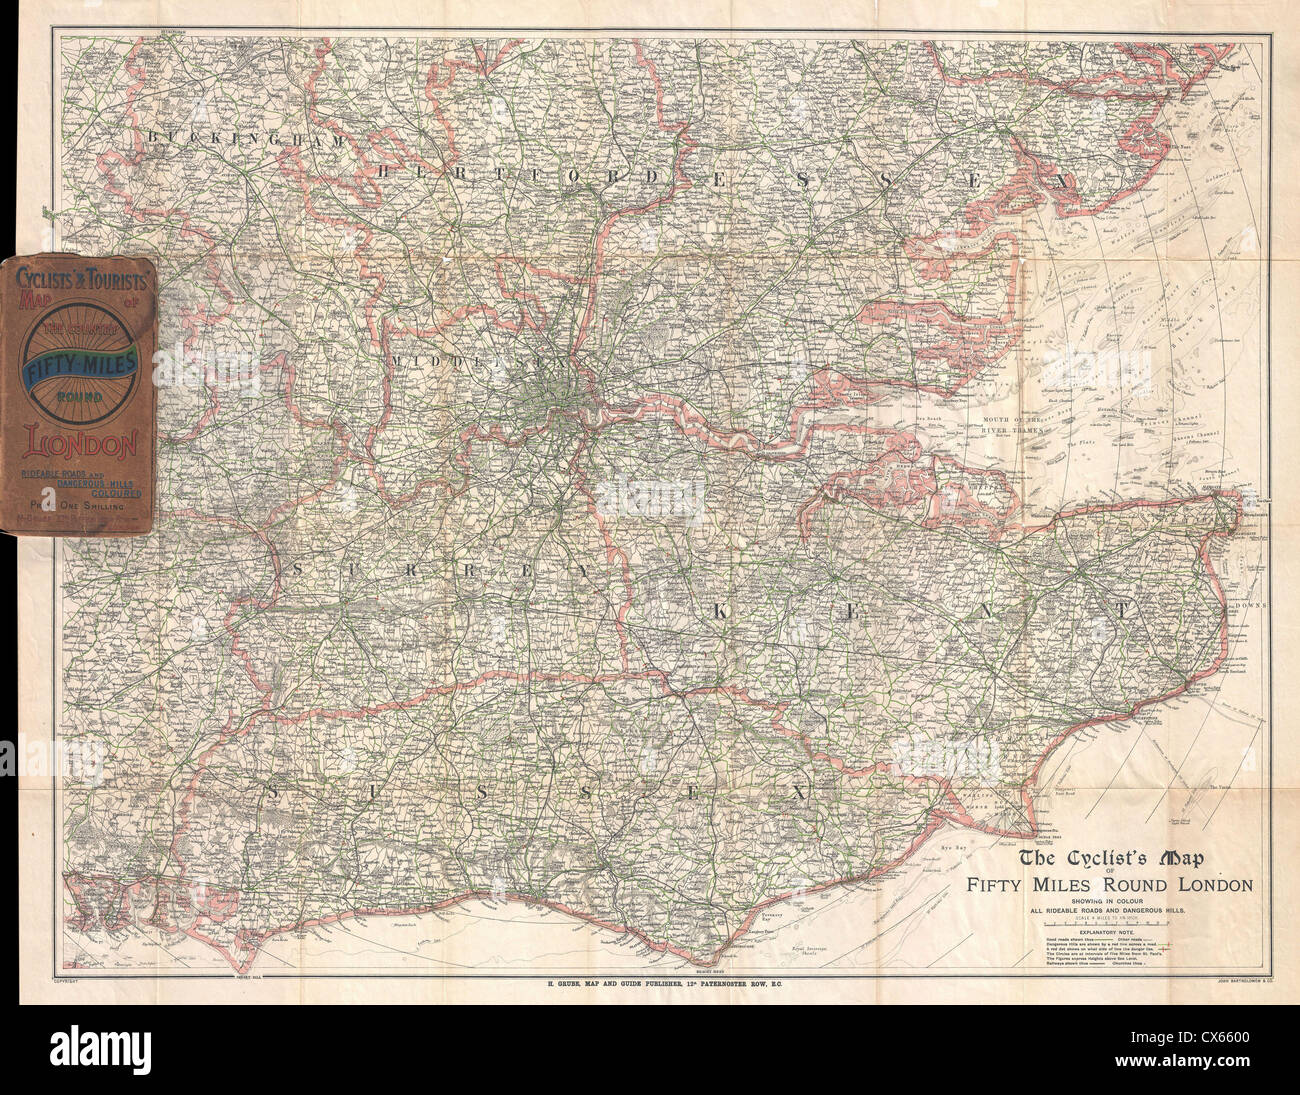 1895 Barthholomew Site du cycliste de 50 kilomètres autour de Londres, Angleterre Banque D'Images